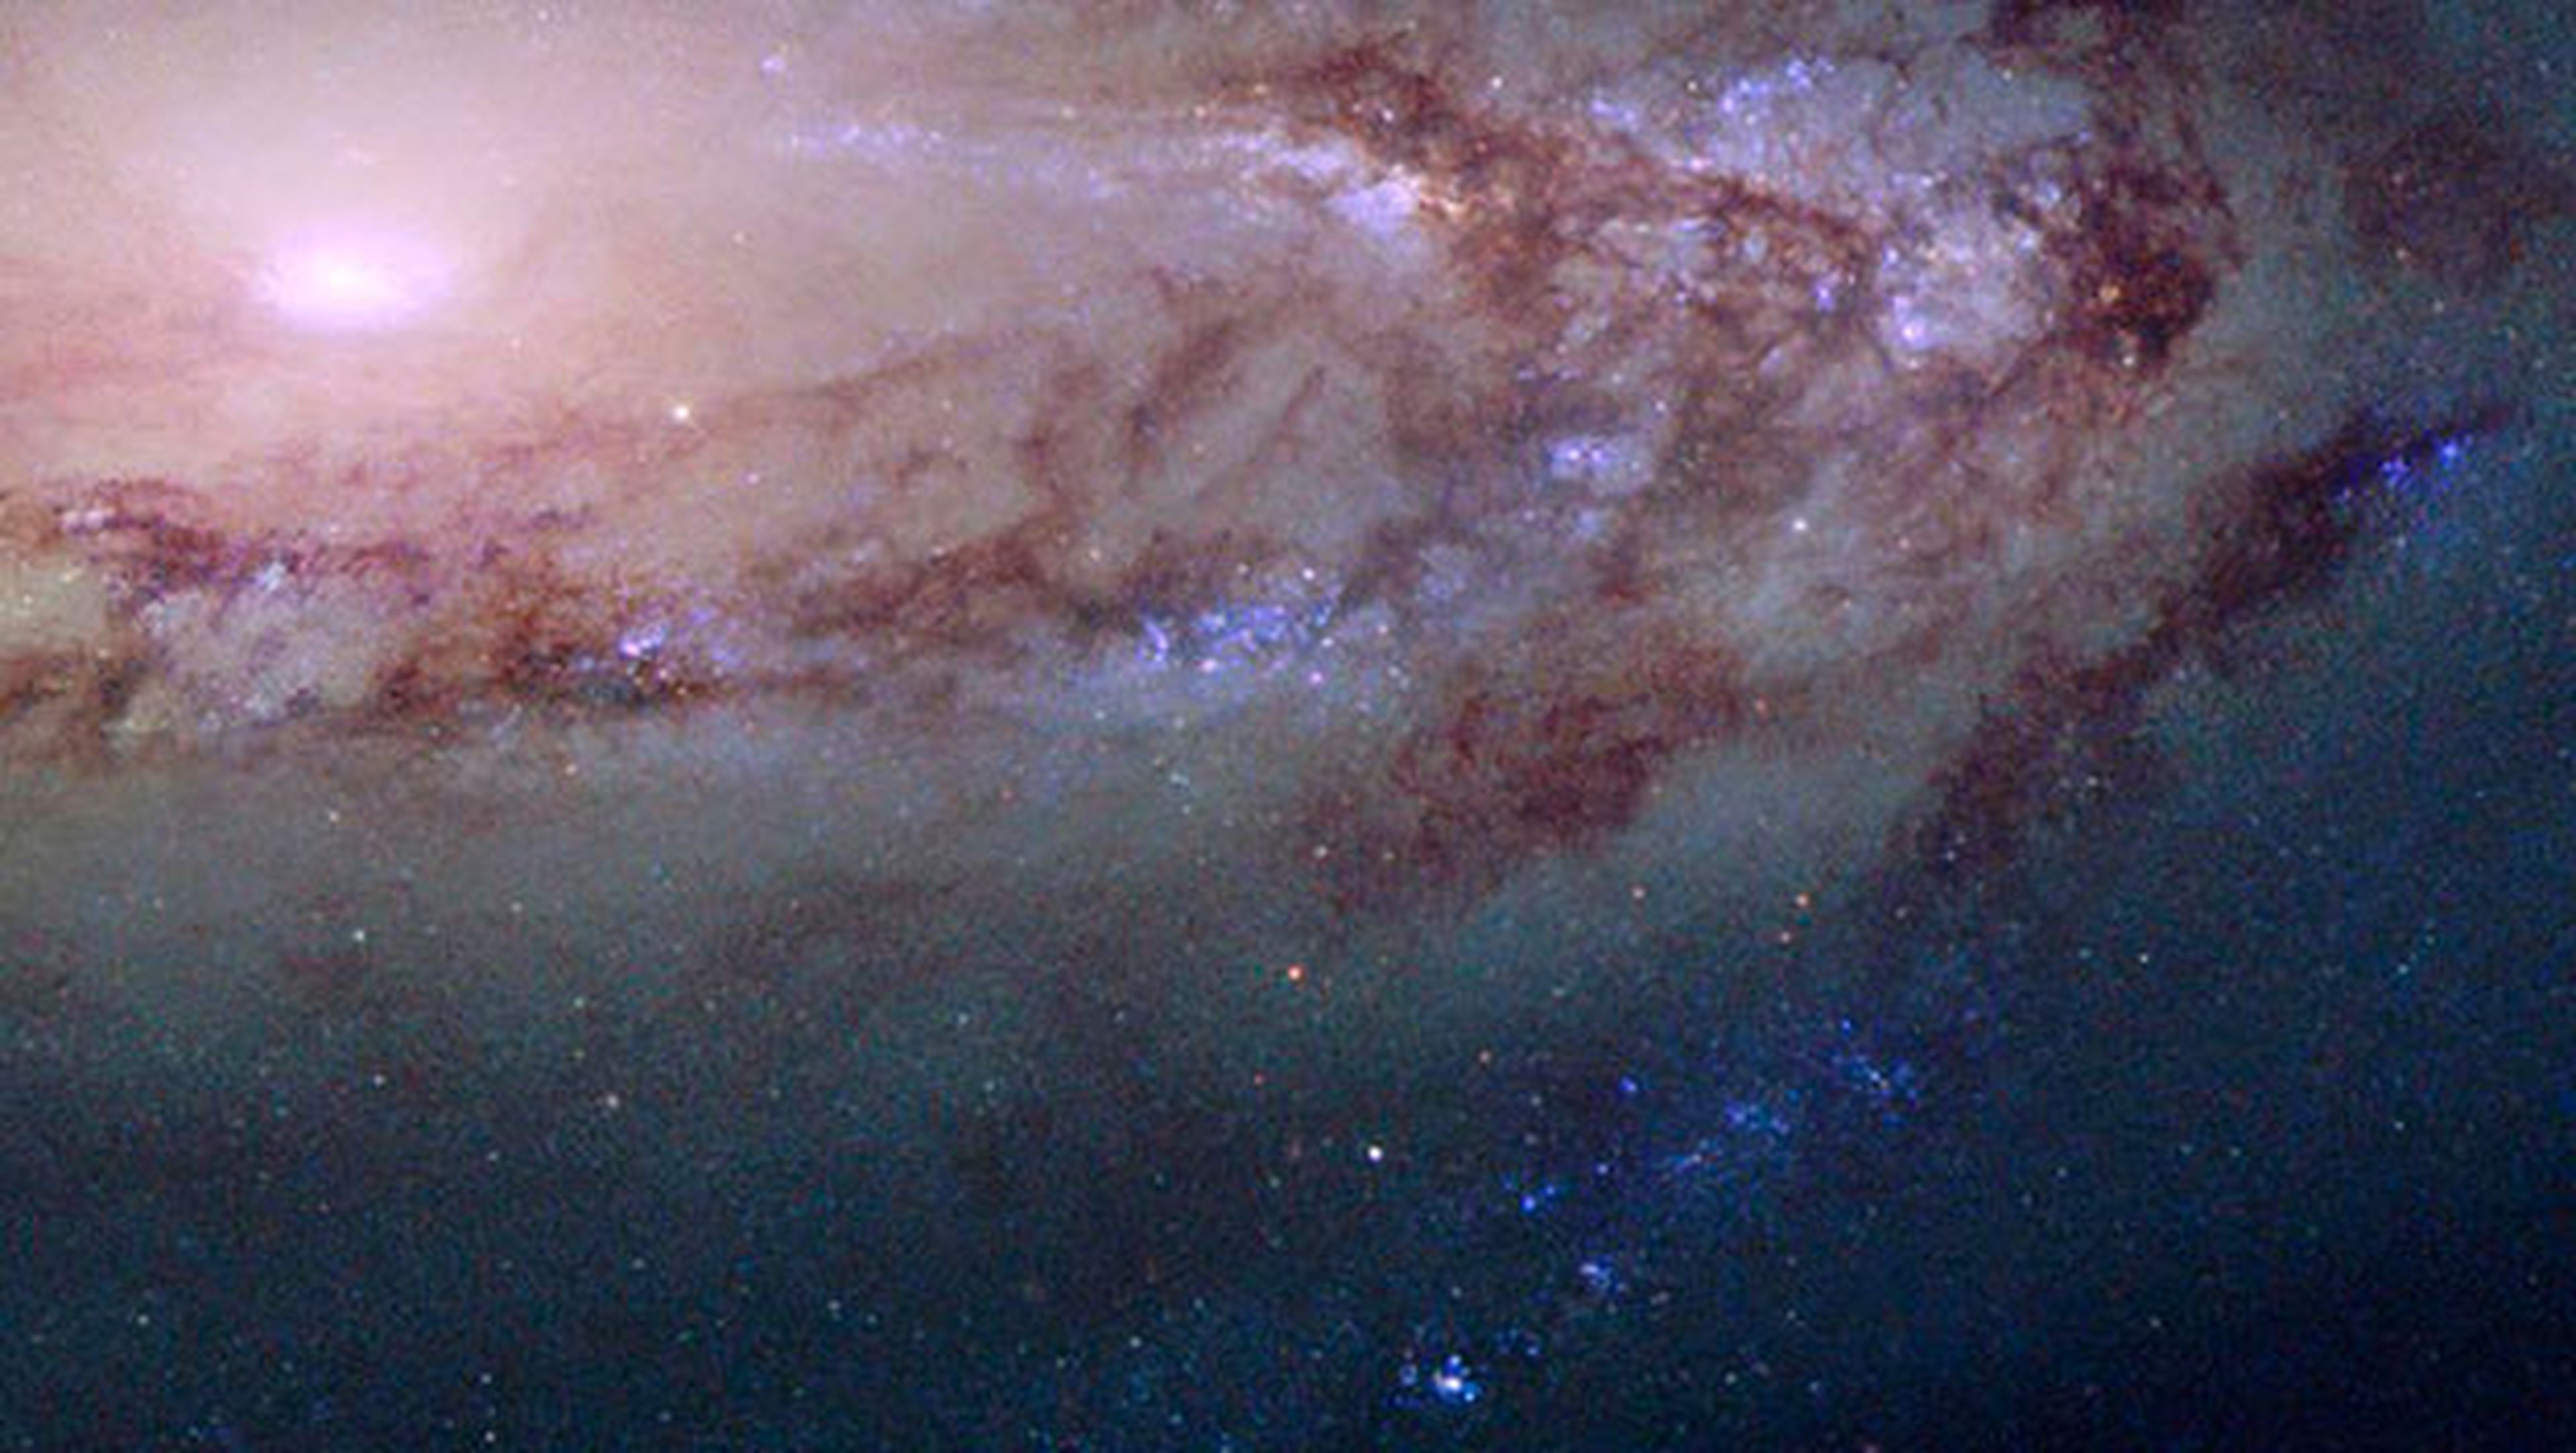 Impresionante colección de fotos del espacio del telescopio Hubble